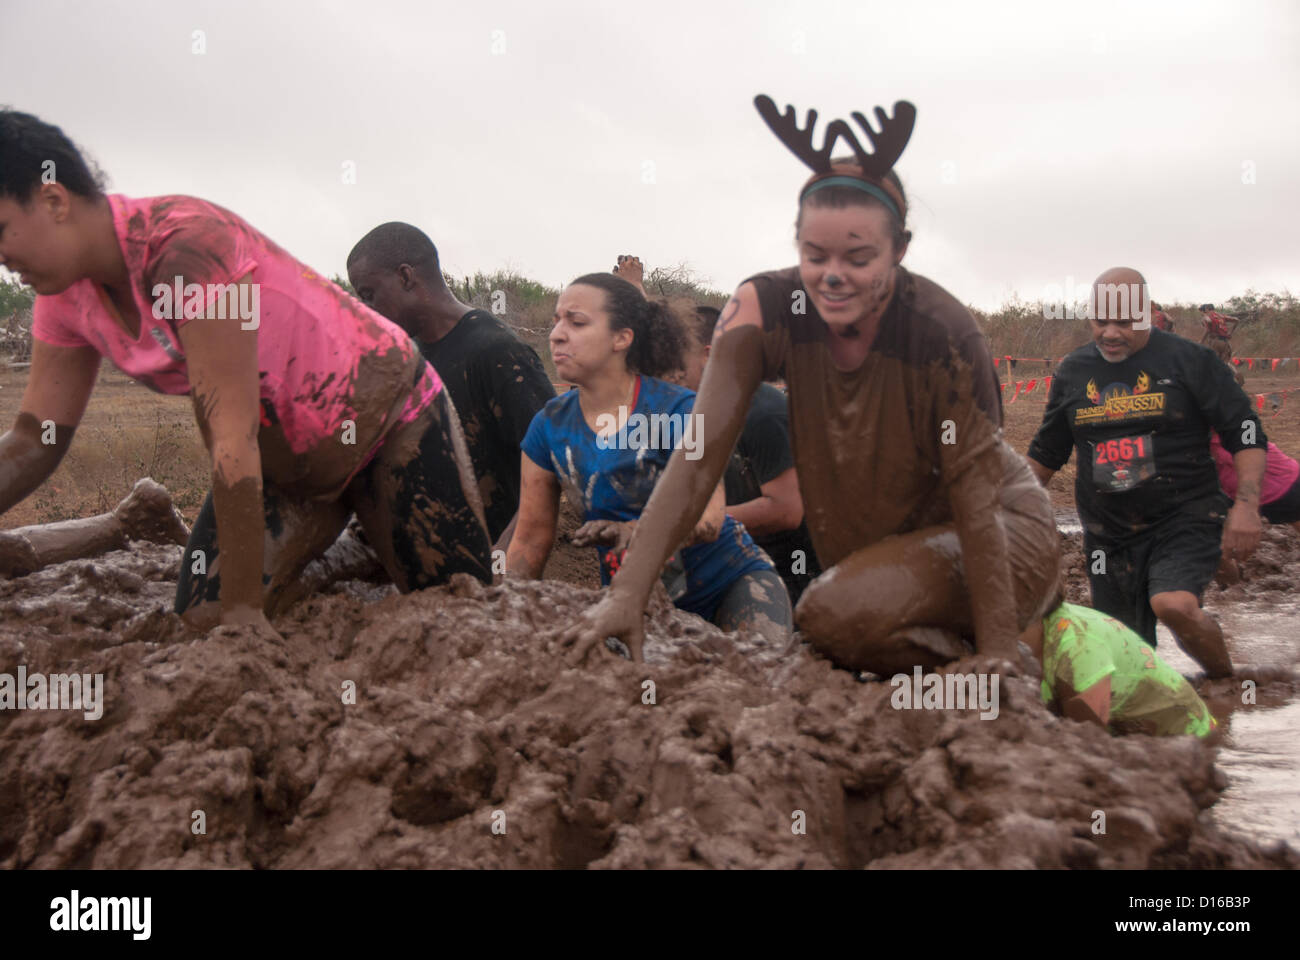 8 décembre 2012 San Antonio, Texas, USA - Les gens rencontrent l'un des nombreux obstacles boue pendant la Gladiator Rock'n courir à San Antonio. Banque D'Images